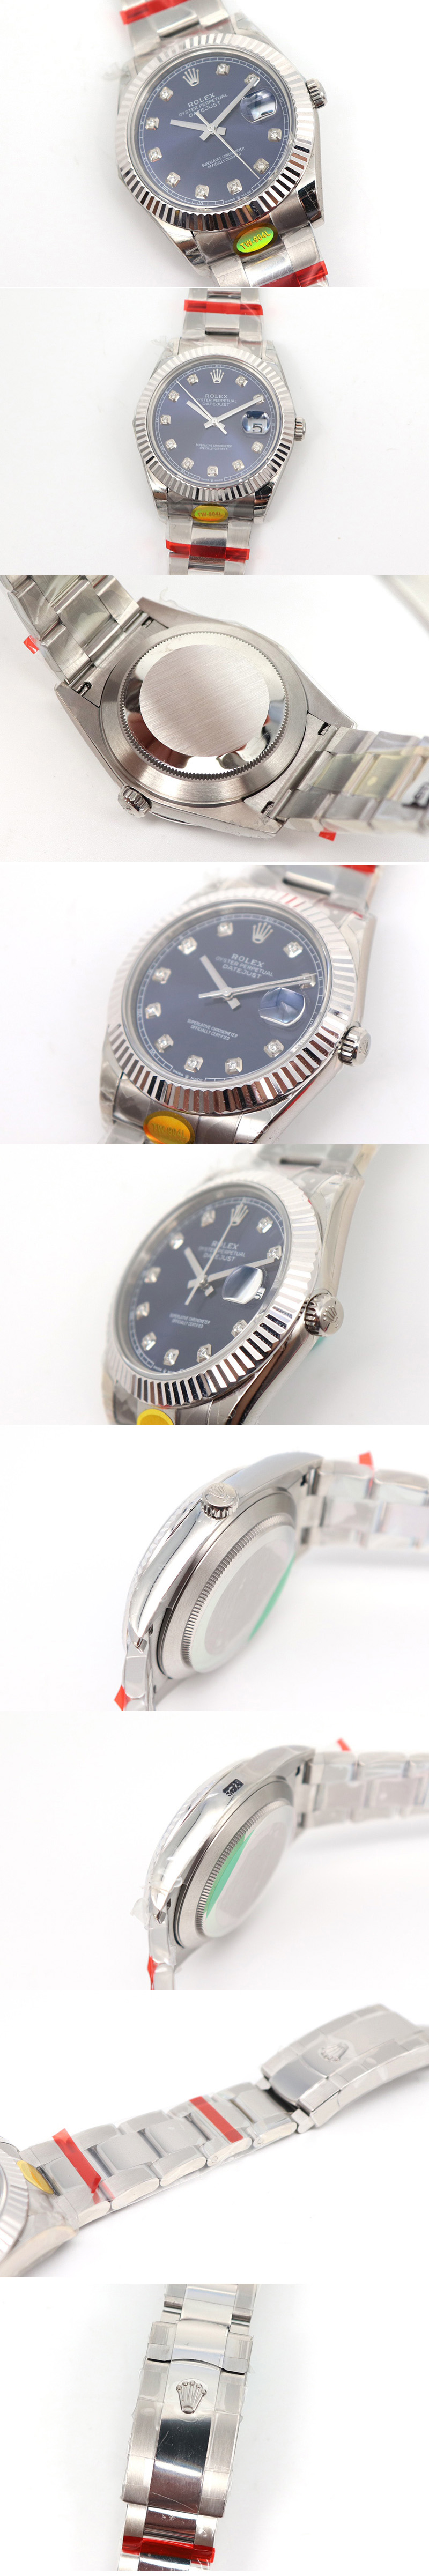 Replica Rolex Datejust II Watches